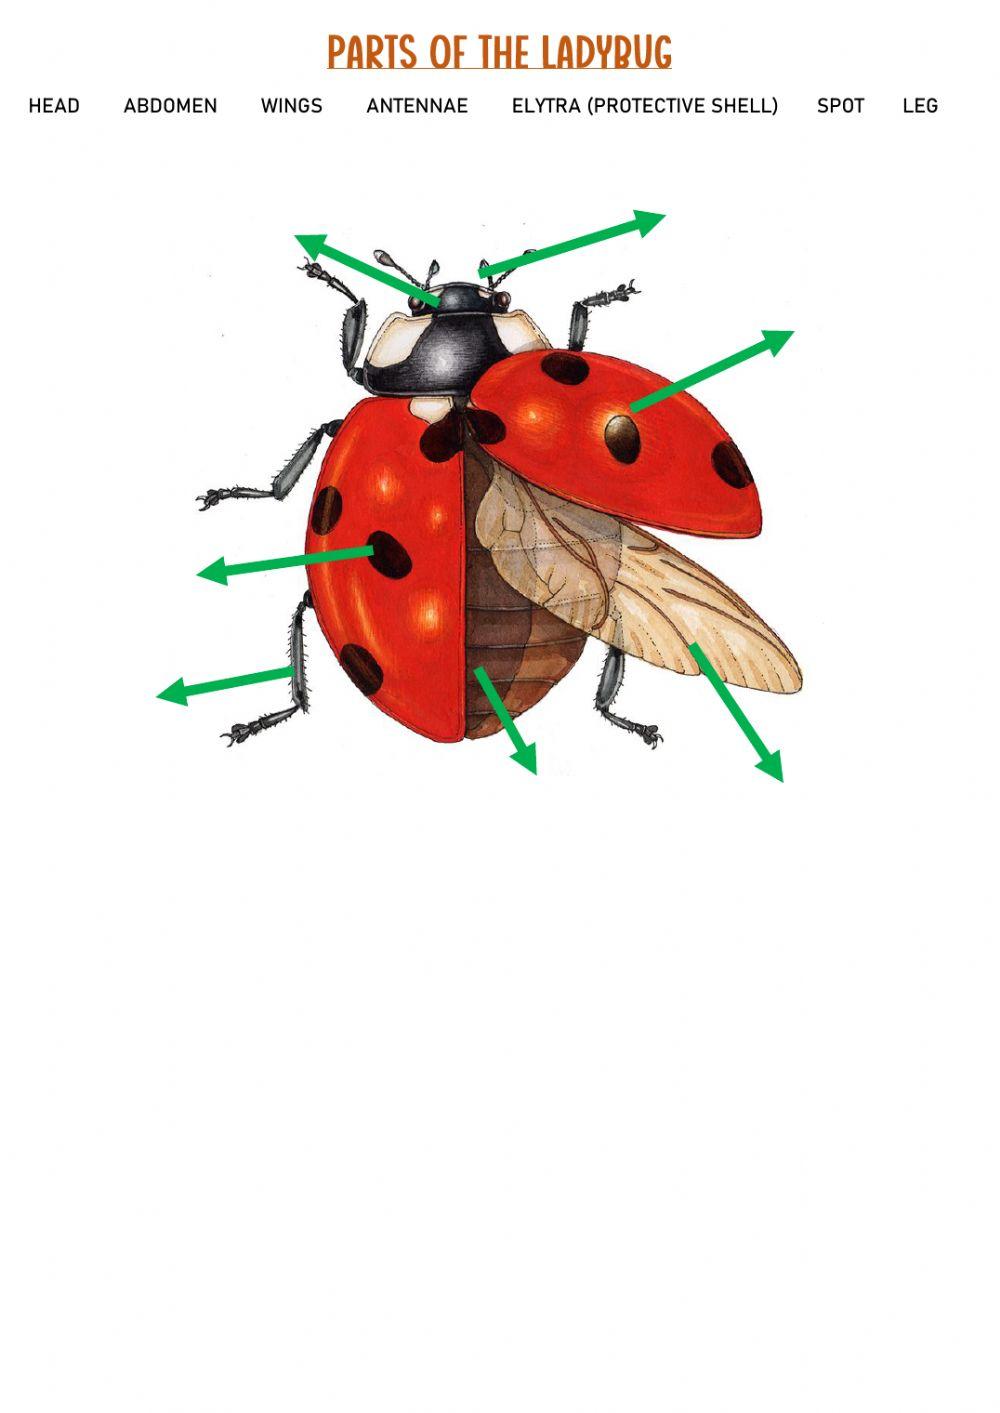 Ladybug - parts of the body